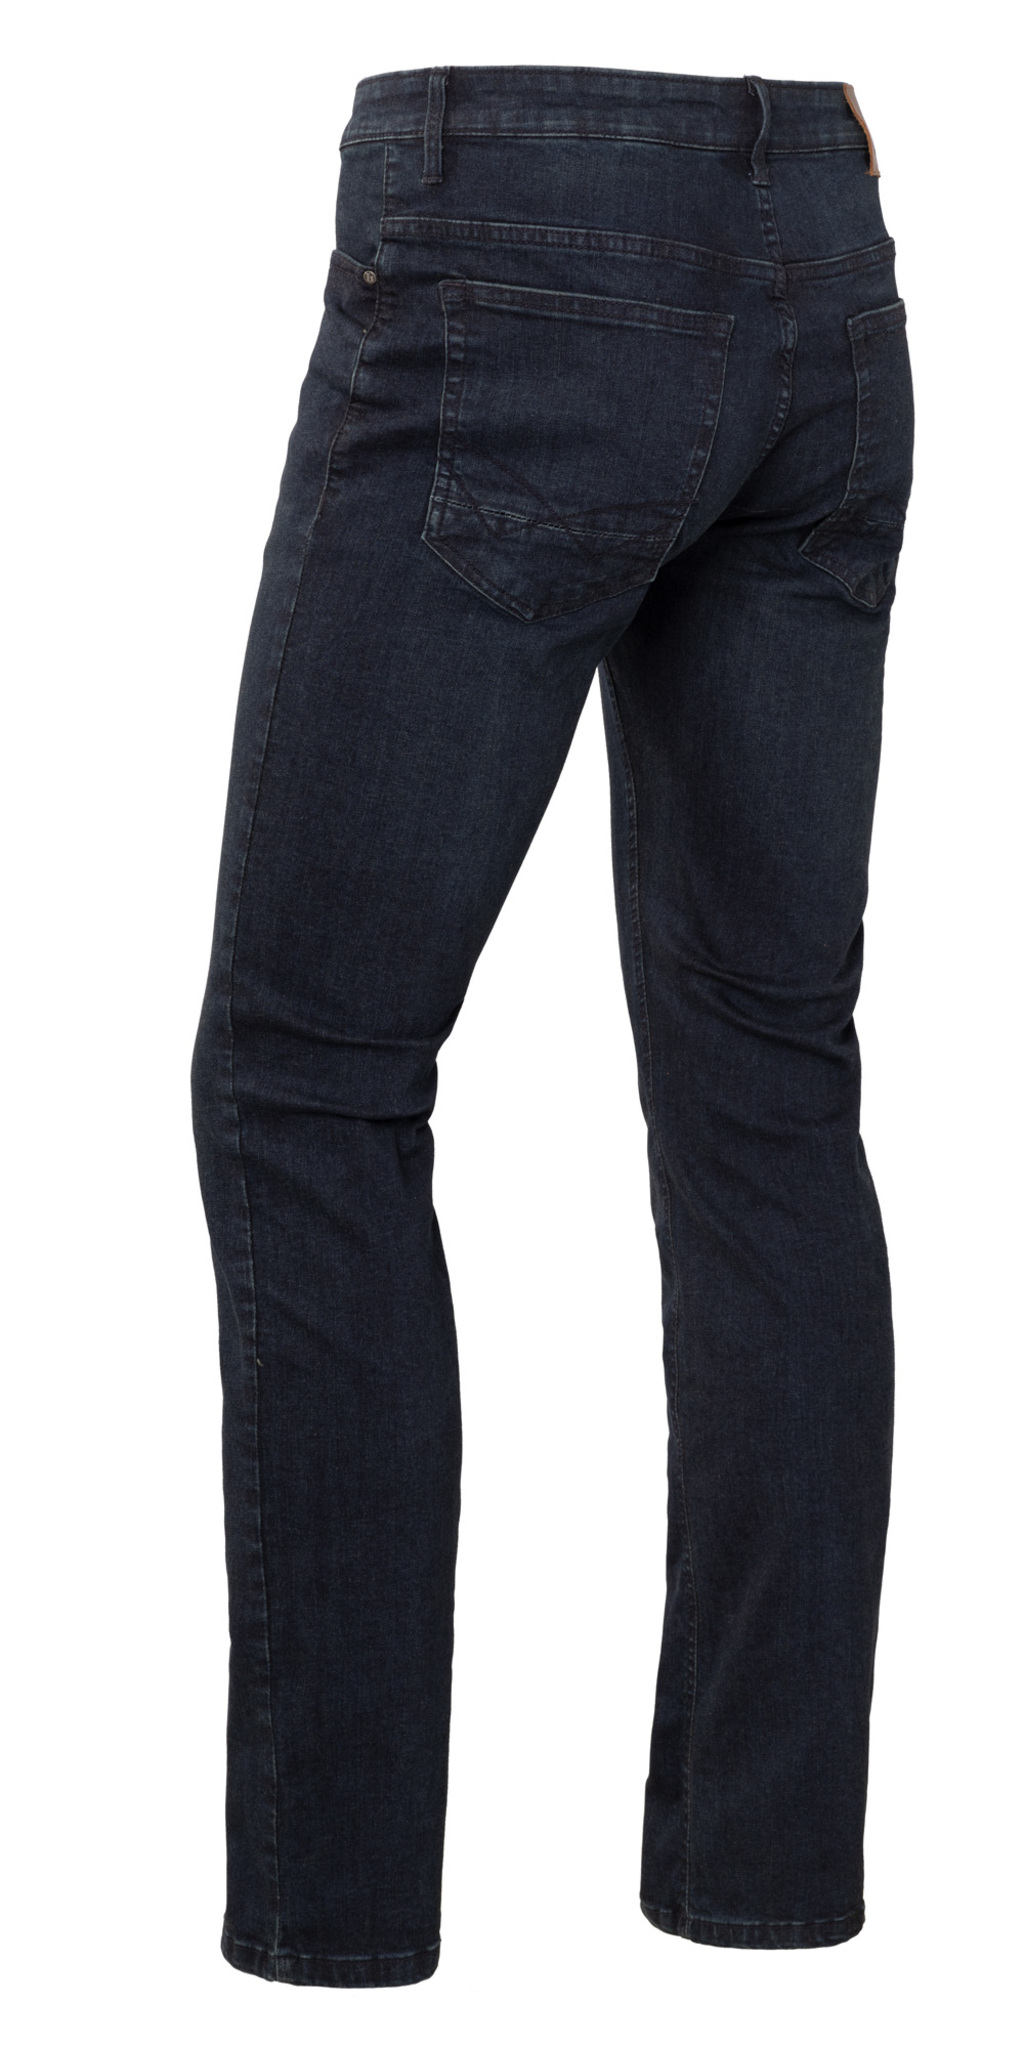 Afbeelding van Brams Paris Heren jeans - danny c90 lengte 32